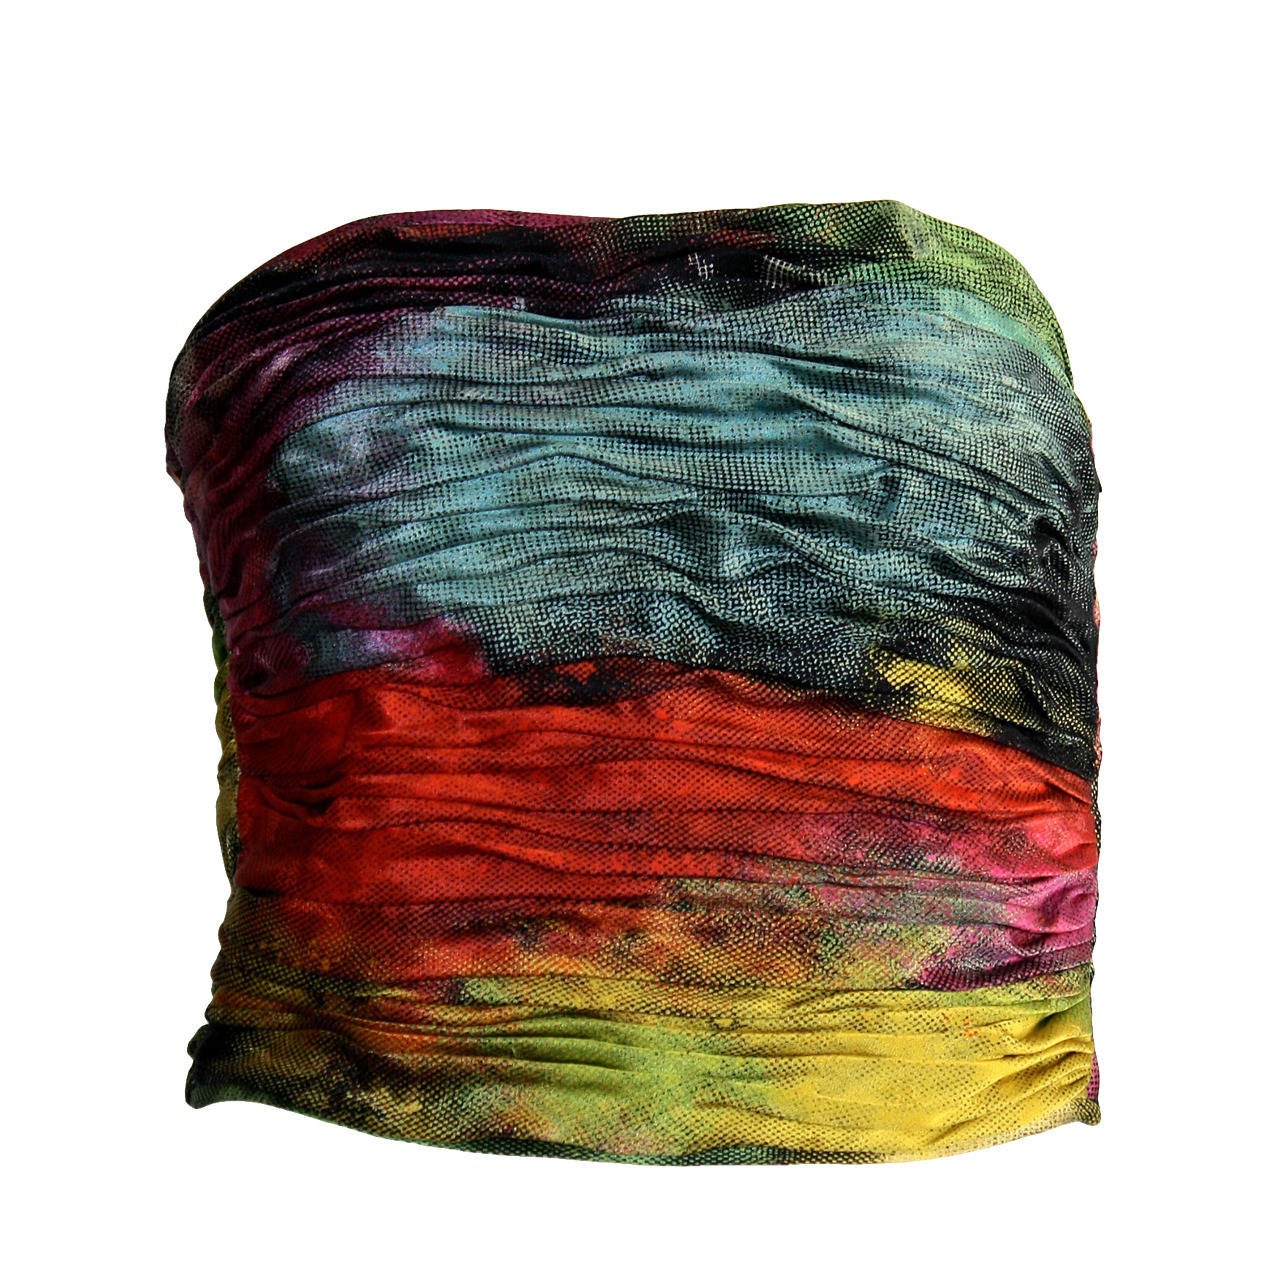 Emanuel Ungaro Vintage Silk Rainbow Ombre Bustier Top